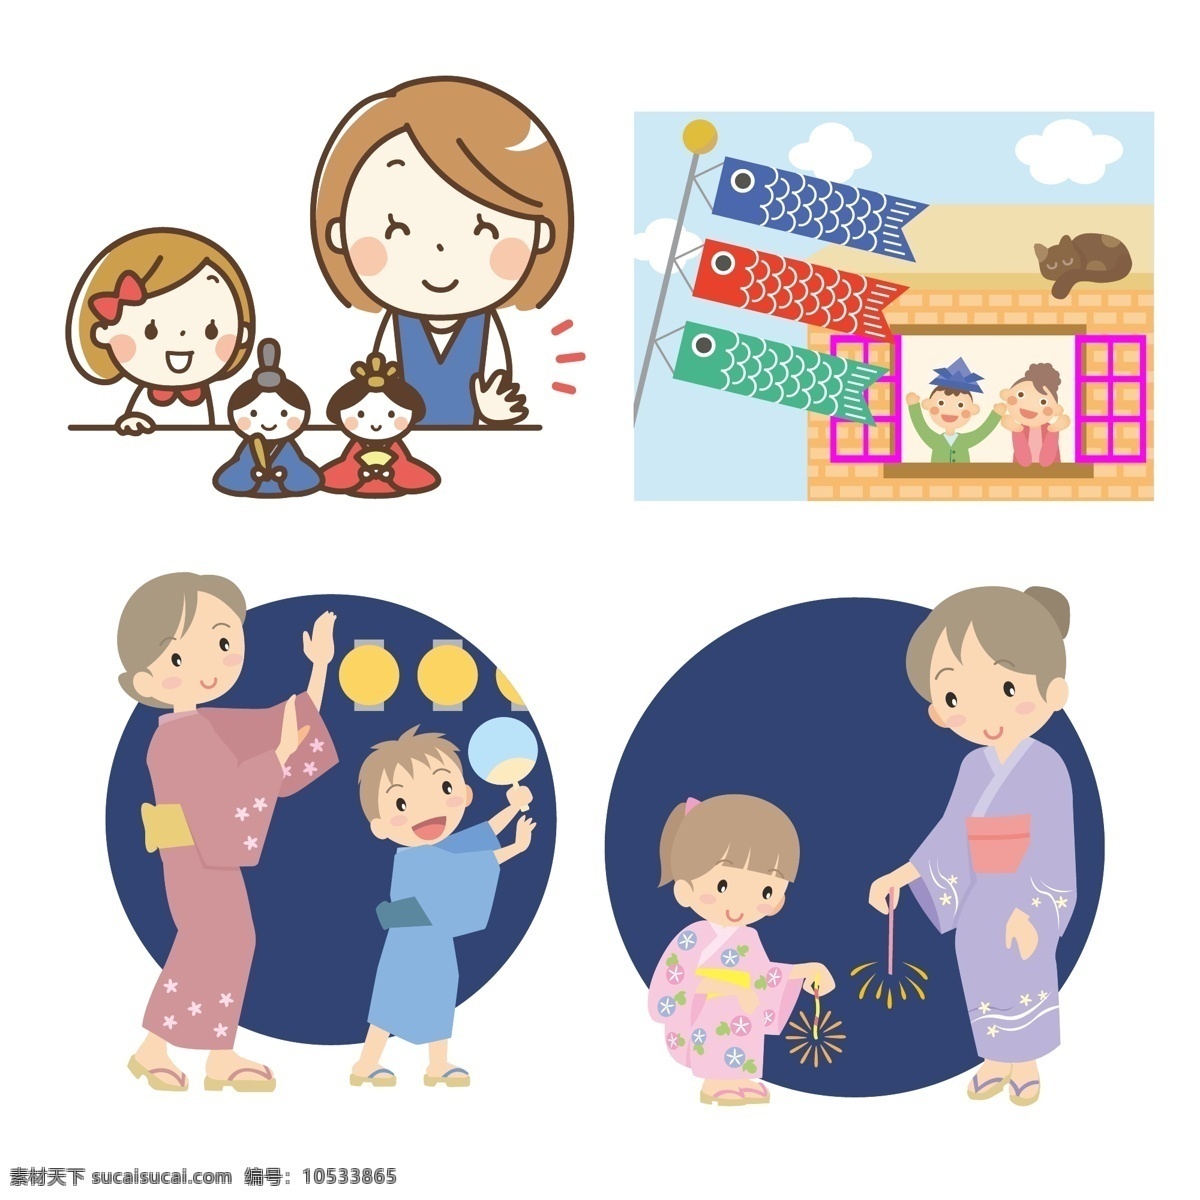 母亲 孩子 母亲与孩子 母子 儿子 女儿 母女 和服 日本儿童节 鲤鱼旗 跳舞 日本女儿节 卡通 动漫卡通插图 动漫动画